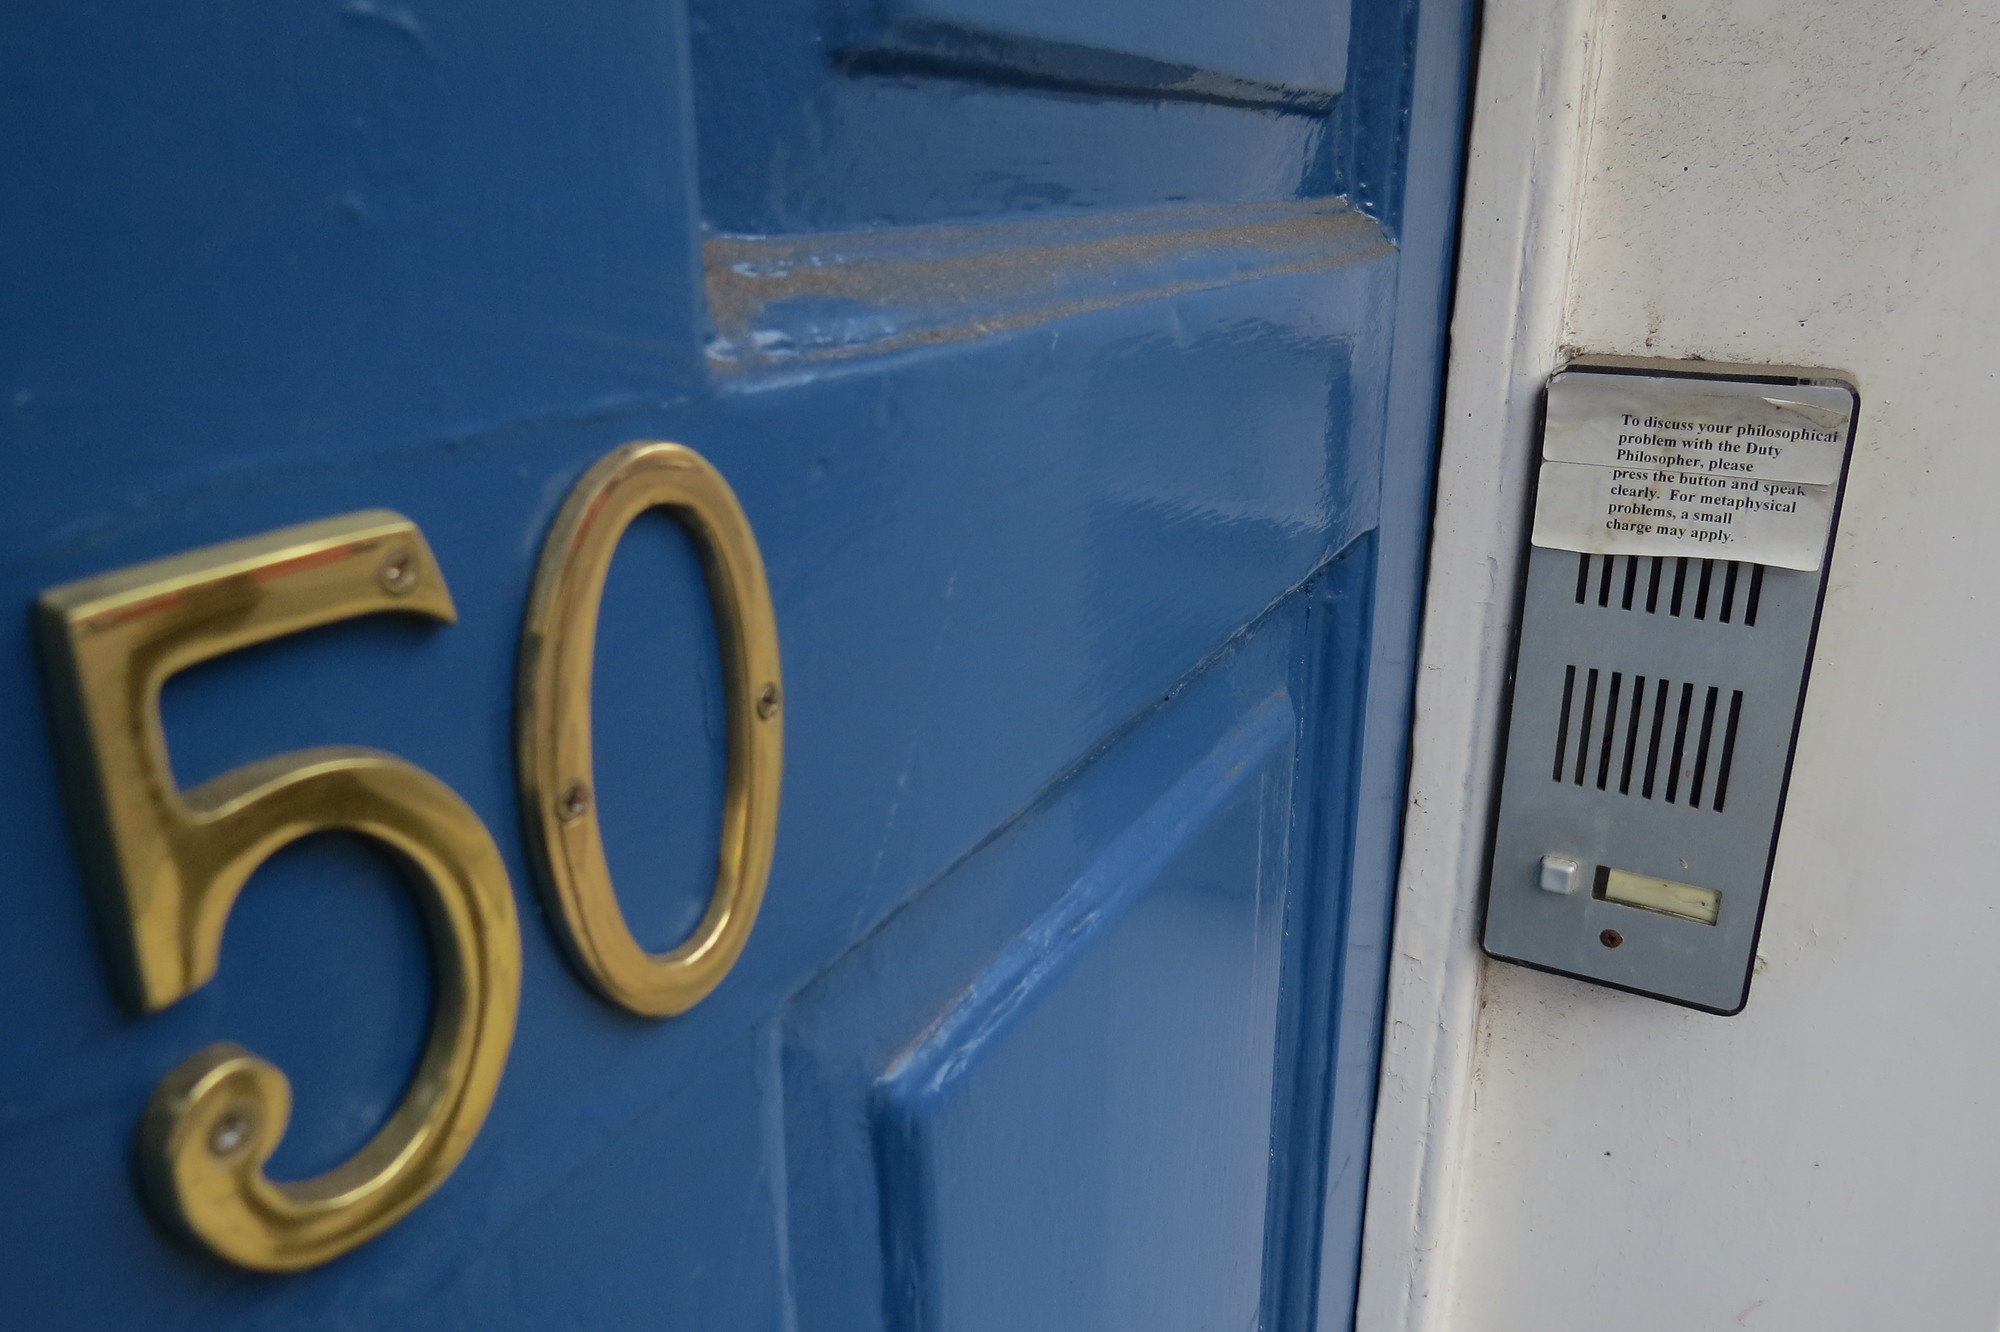 Philosophy door showing the house number 50